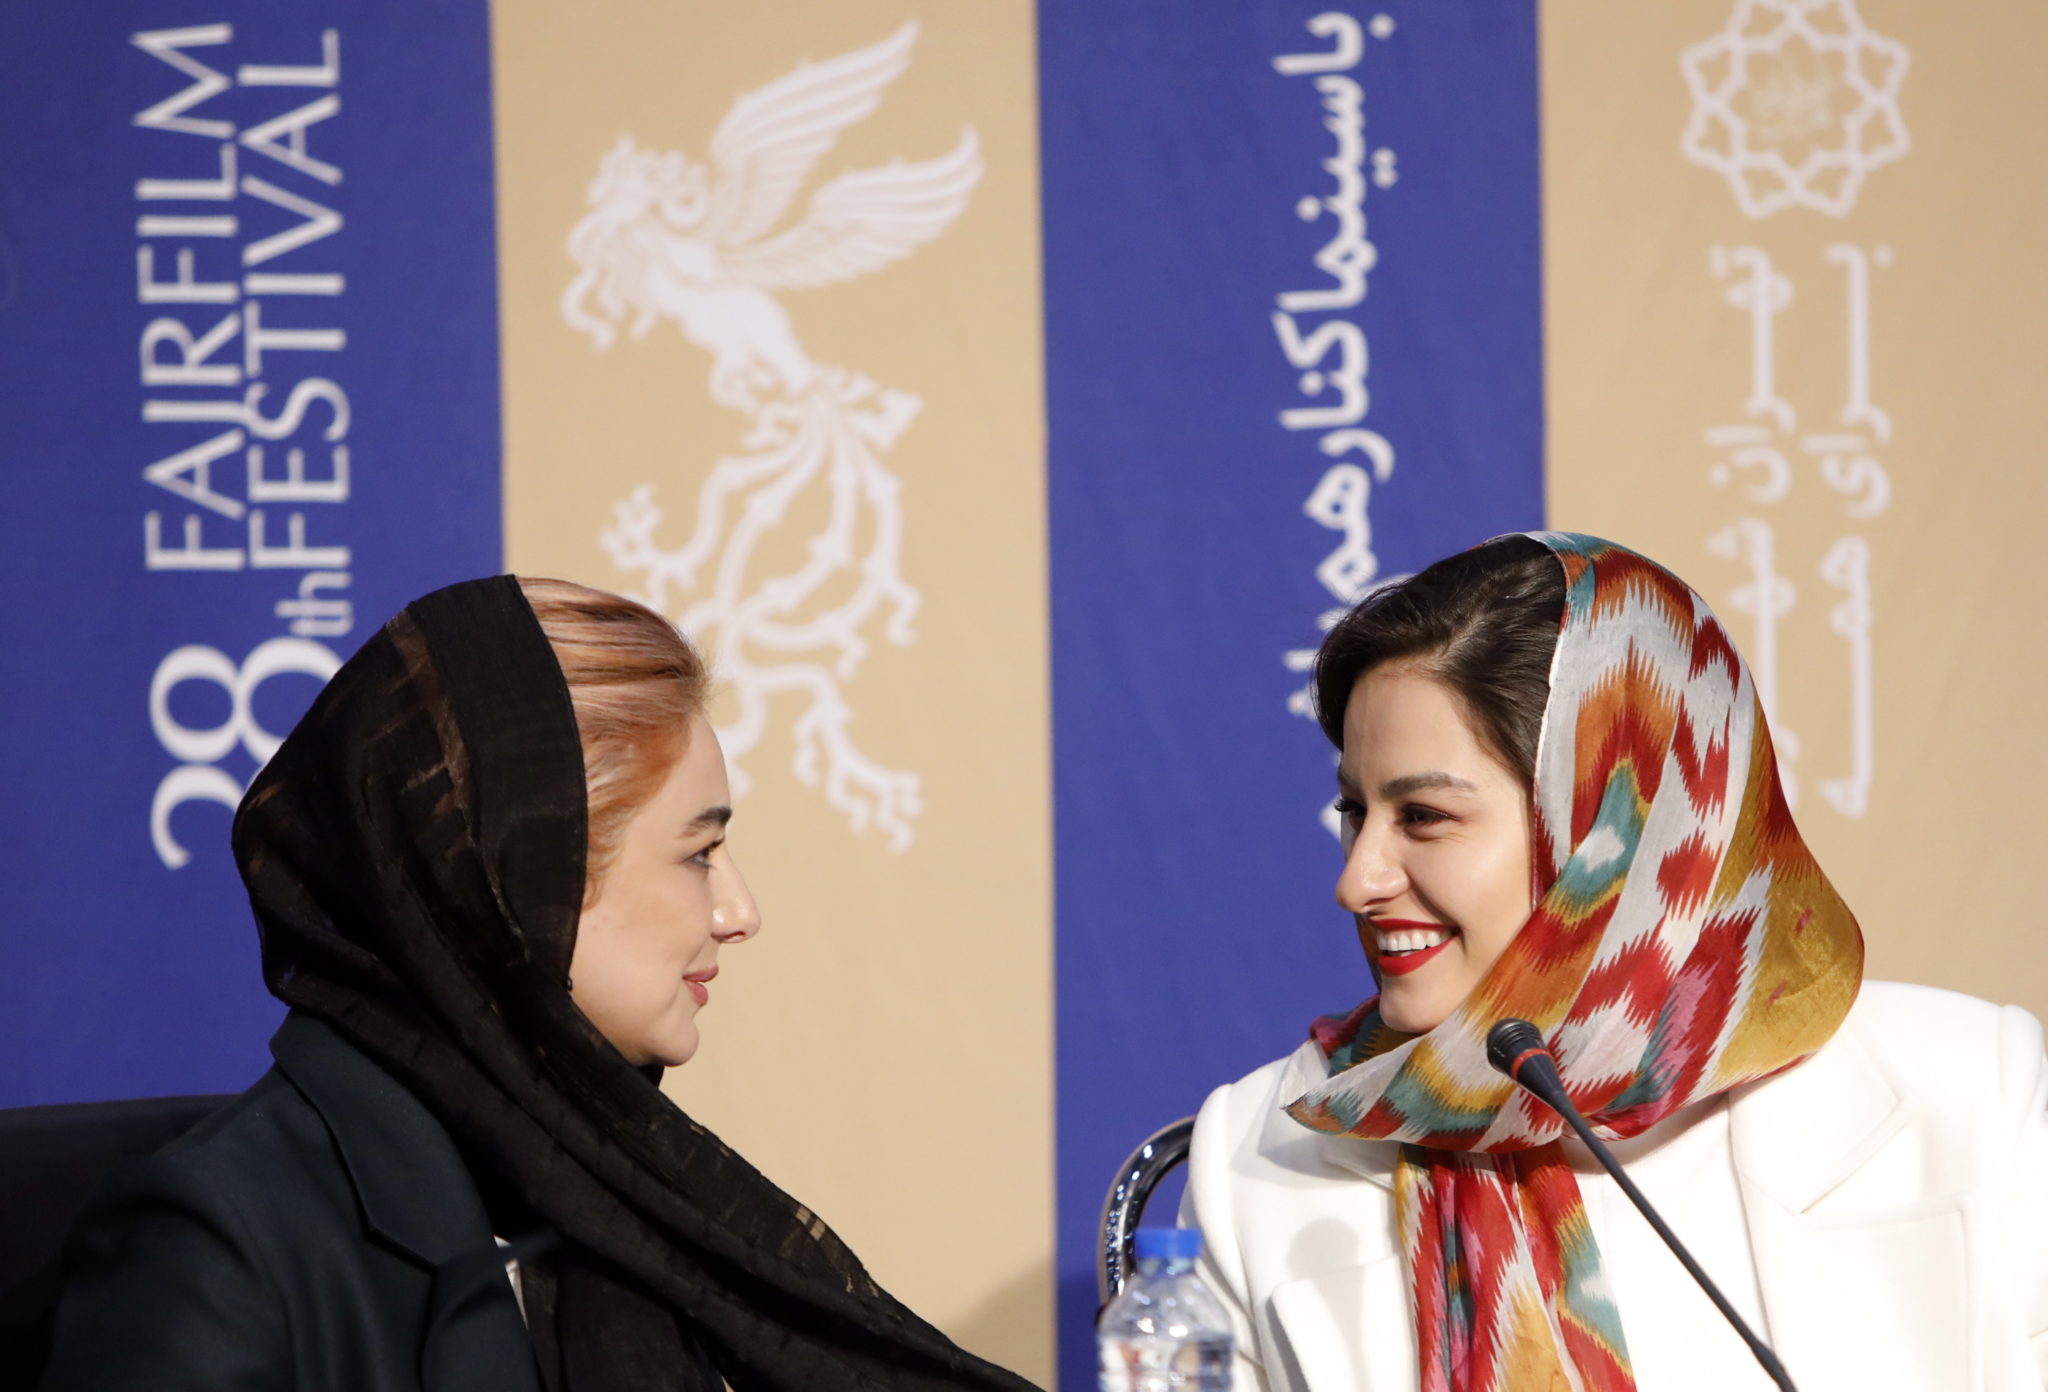 Iran: festiwal filmowy w Teheranie, fot. EPA/ABEDIN TAHERKENAREH